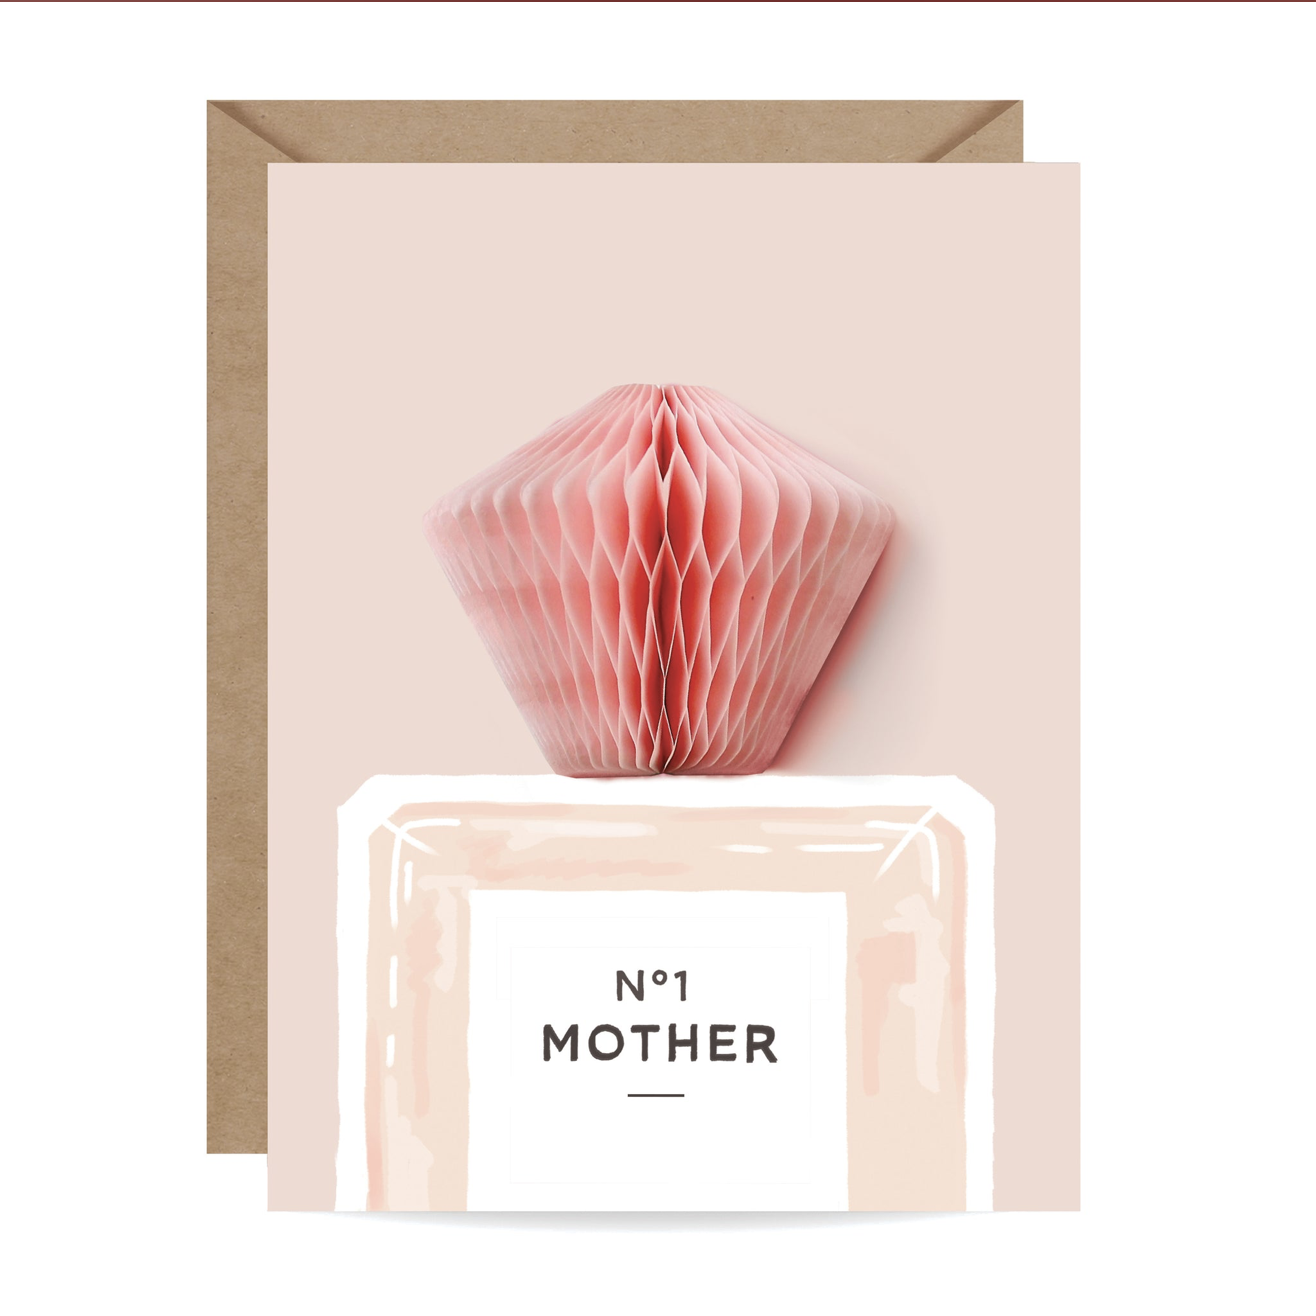 Inklings Paperie Card - Perfume Pop-Up